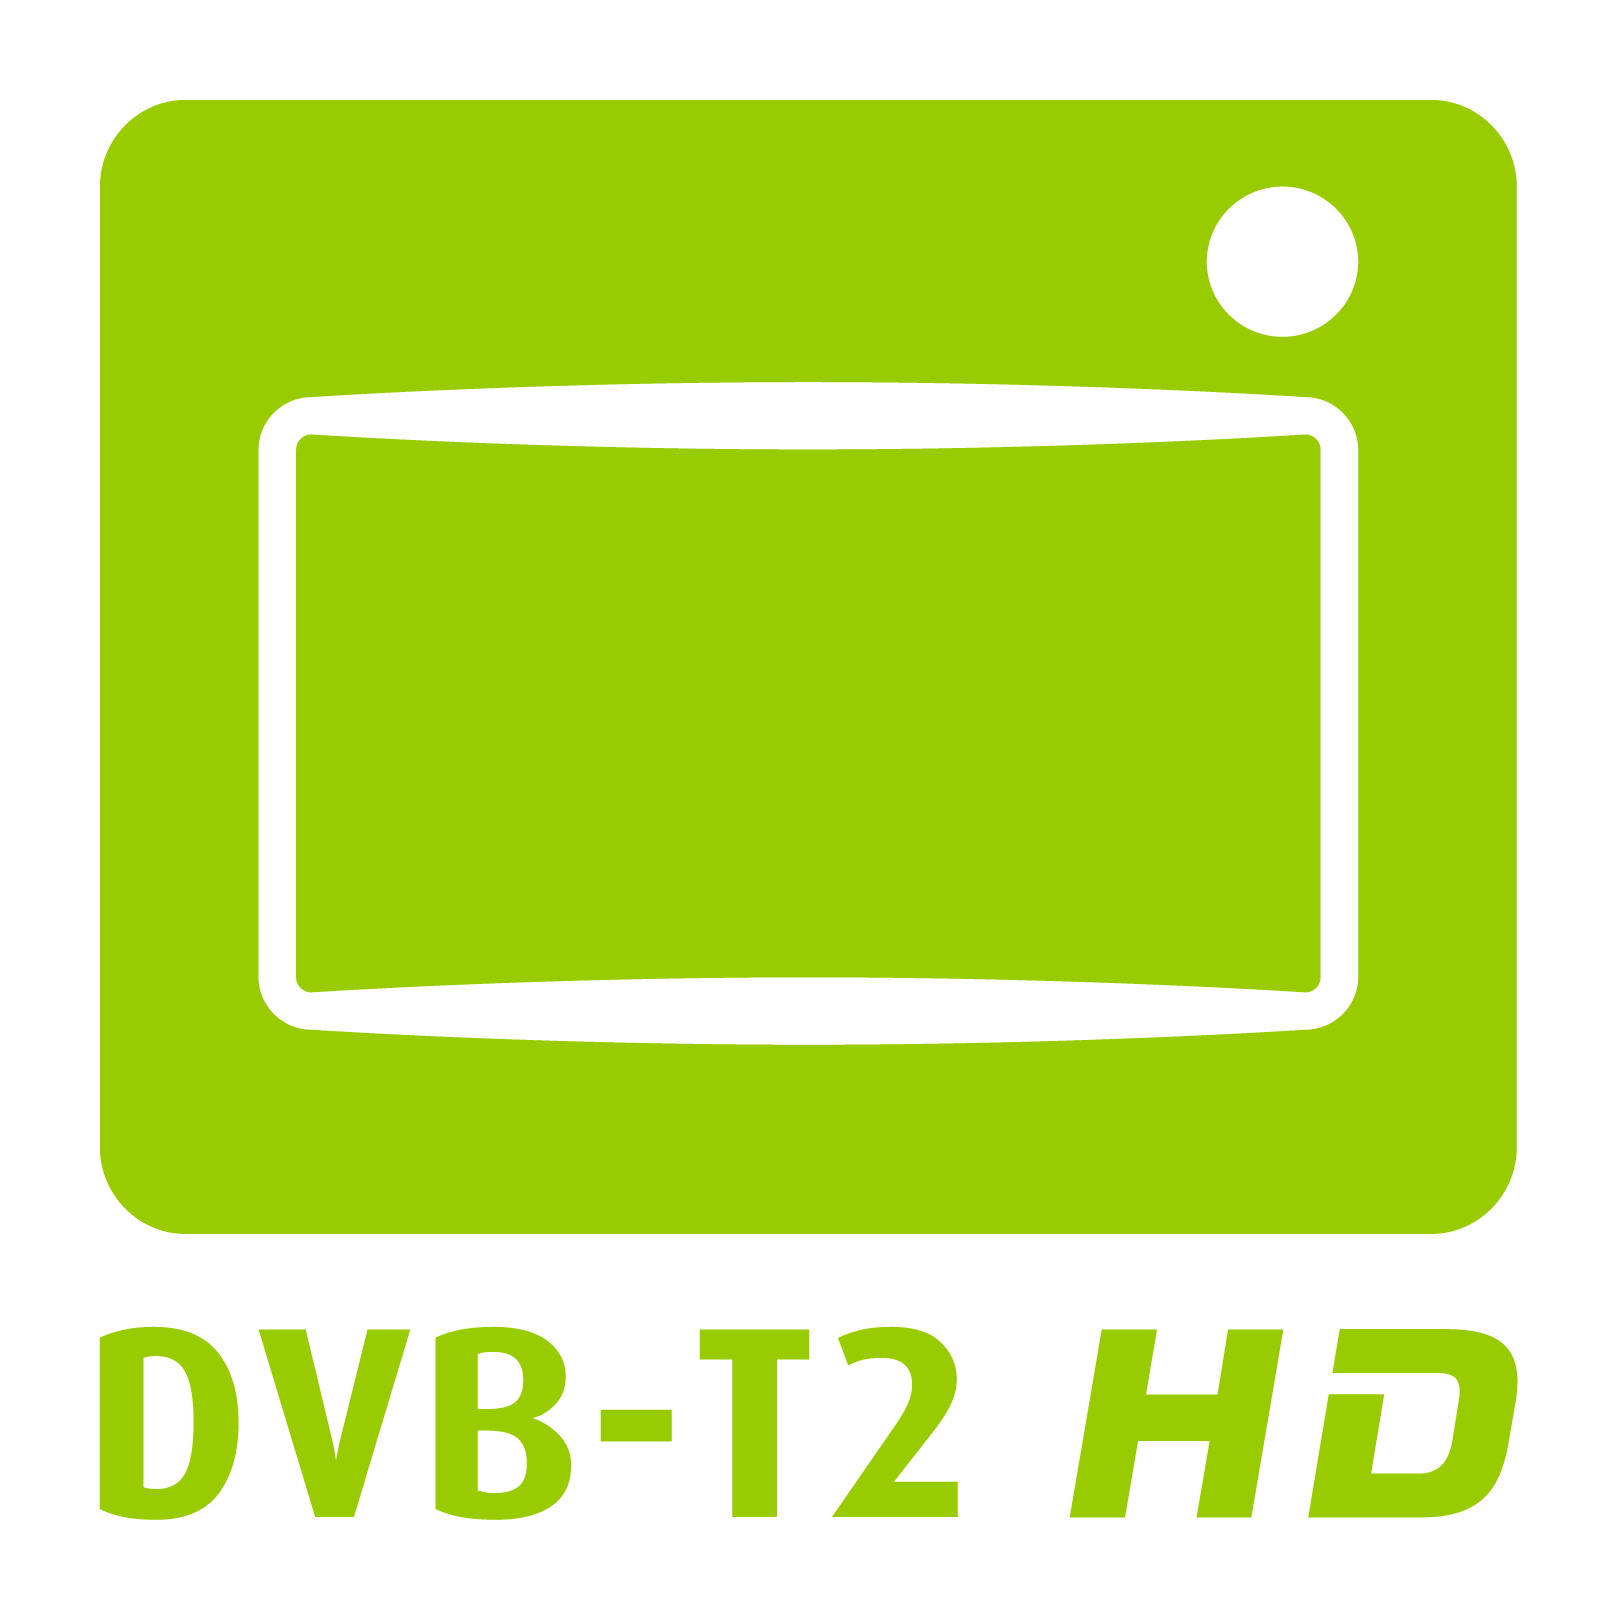 An diesem Logo können Konsumenten Geräte erkennen, die DVB-T2 HD empfangen können. Grafik: DVB-T2HD.de